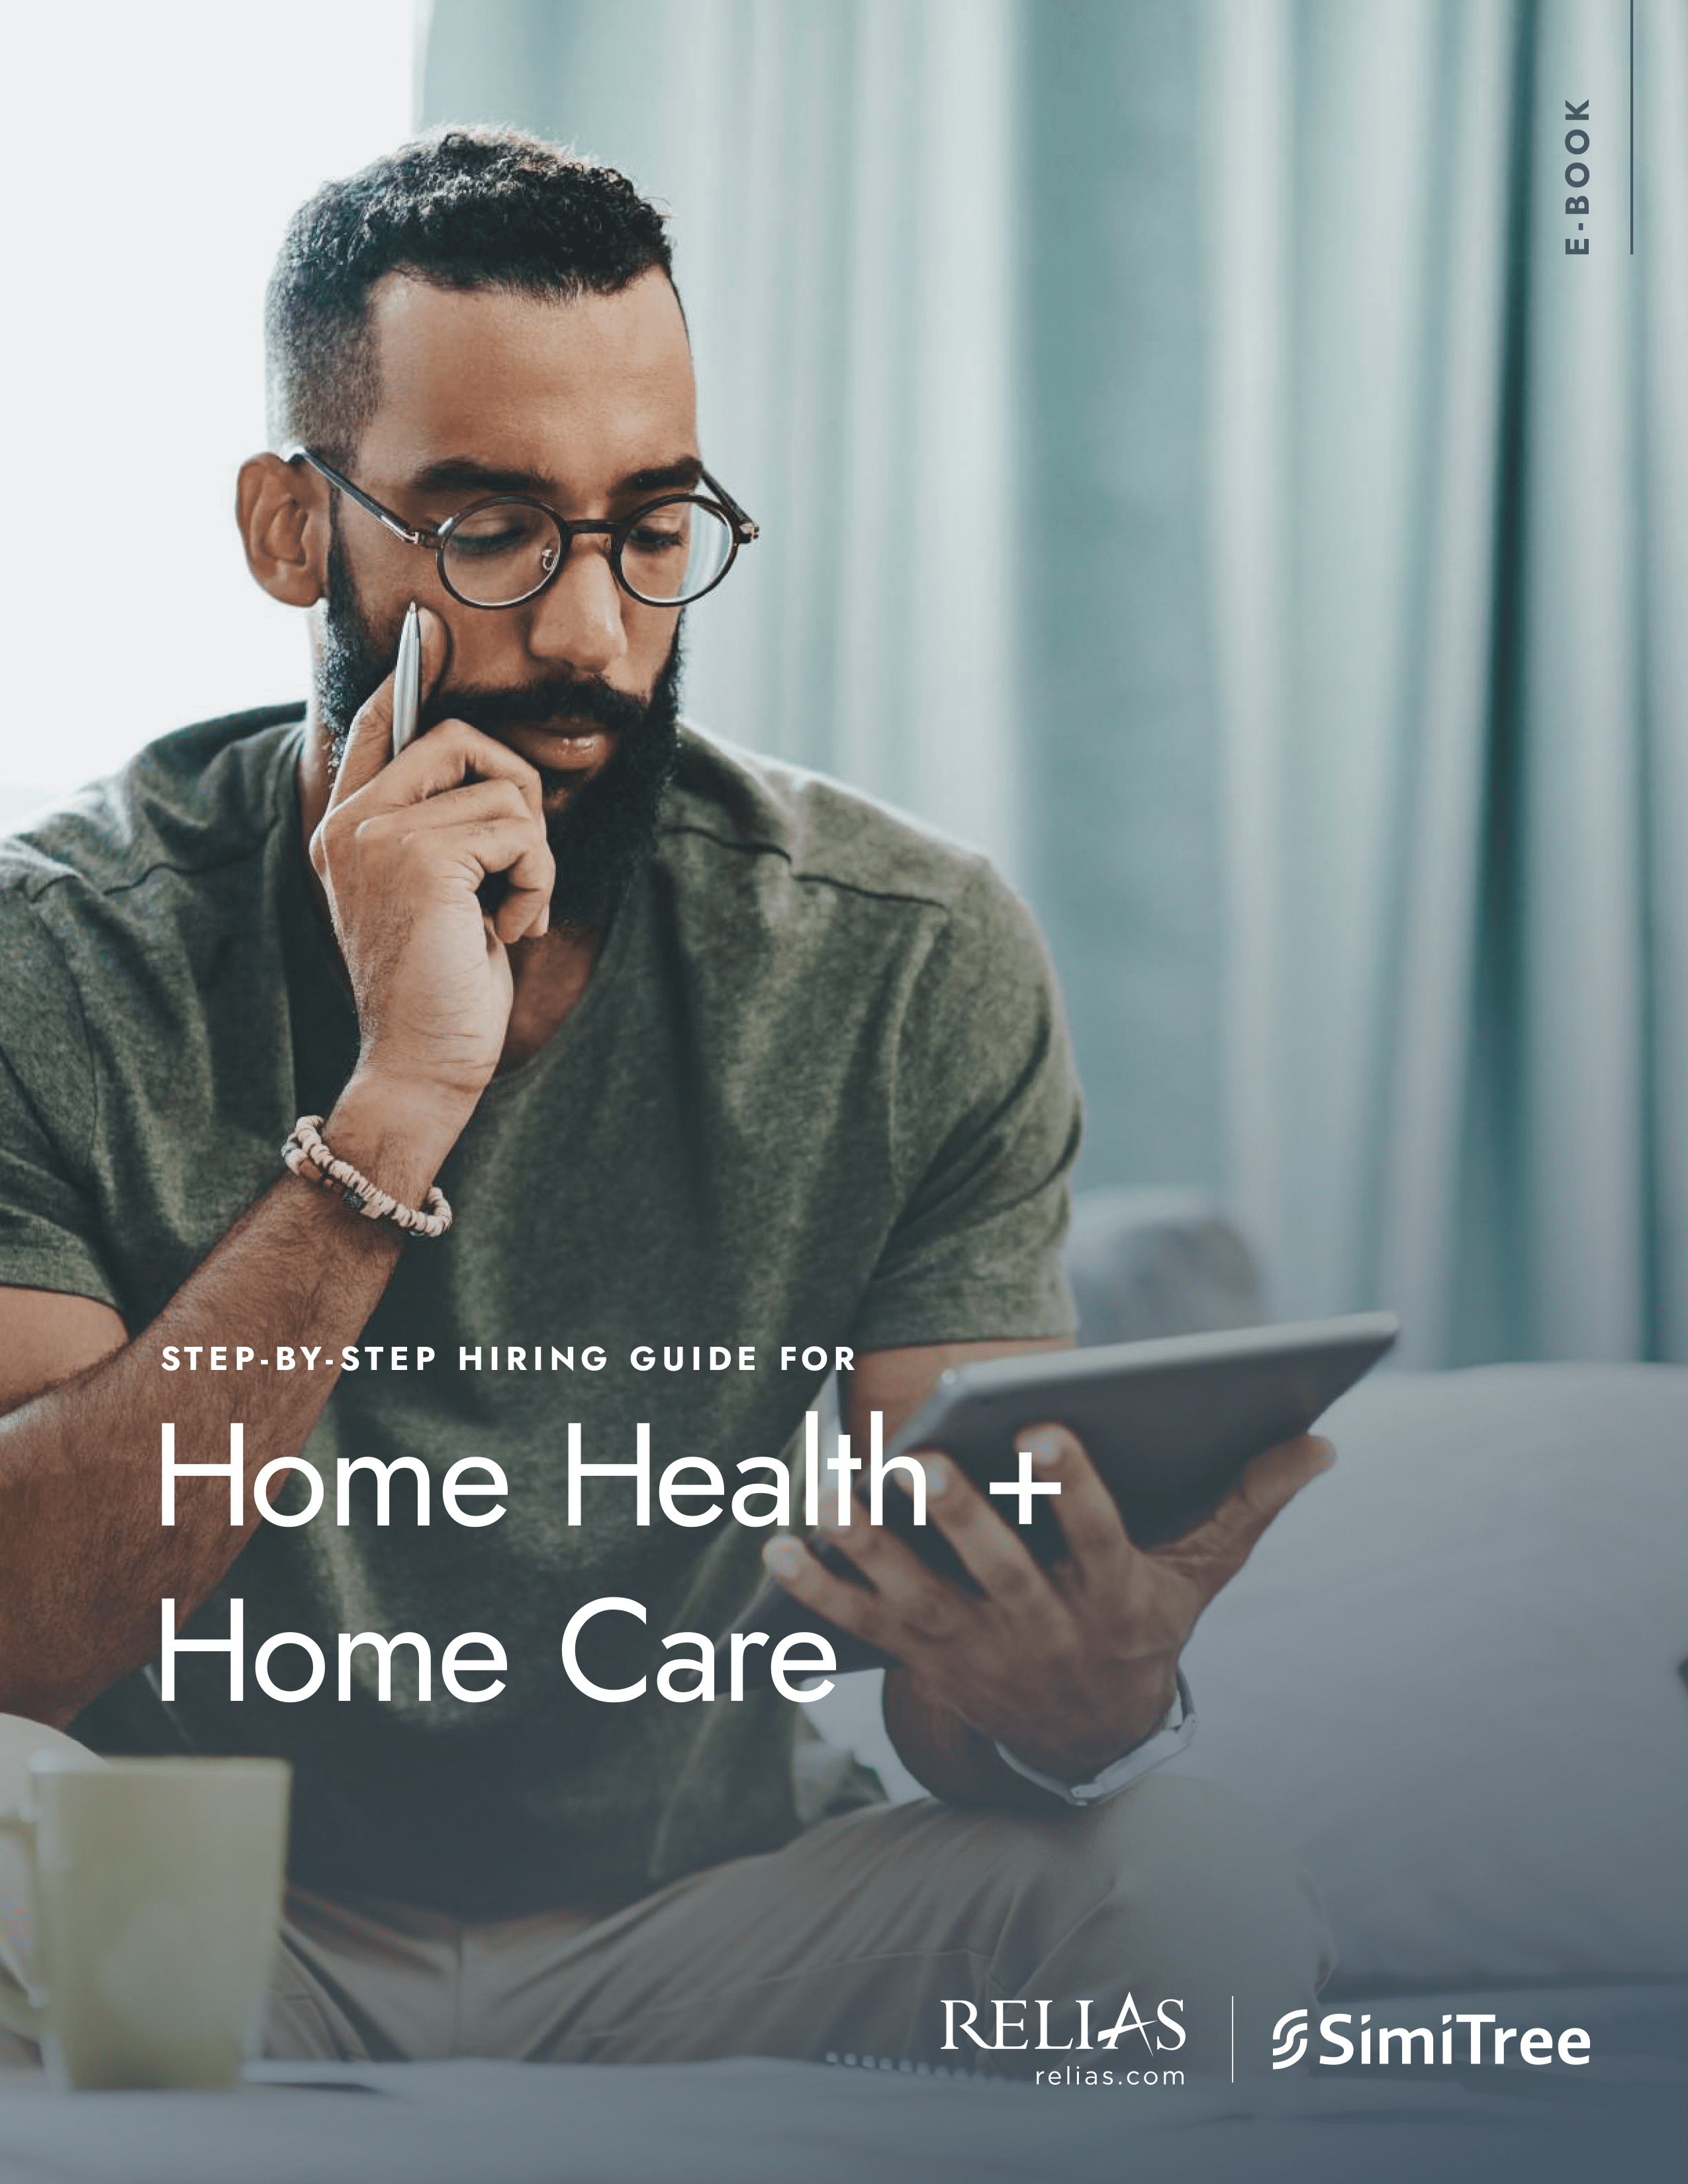 https://www.relias.com/wp-content/uploads/2020/09/home-health-home-care-hiring-guide.jpg